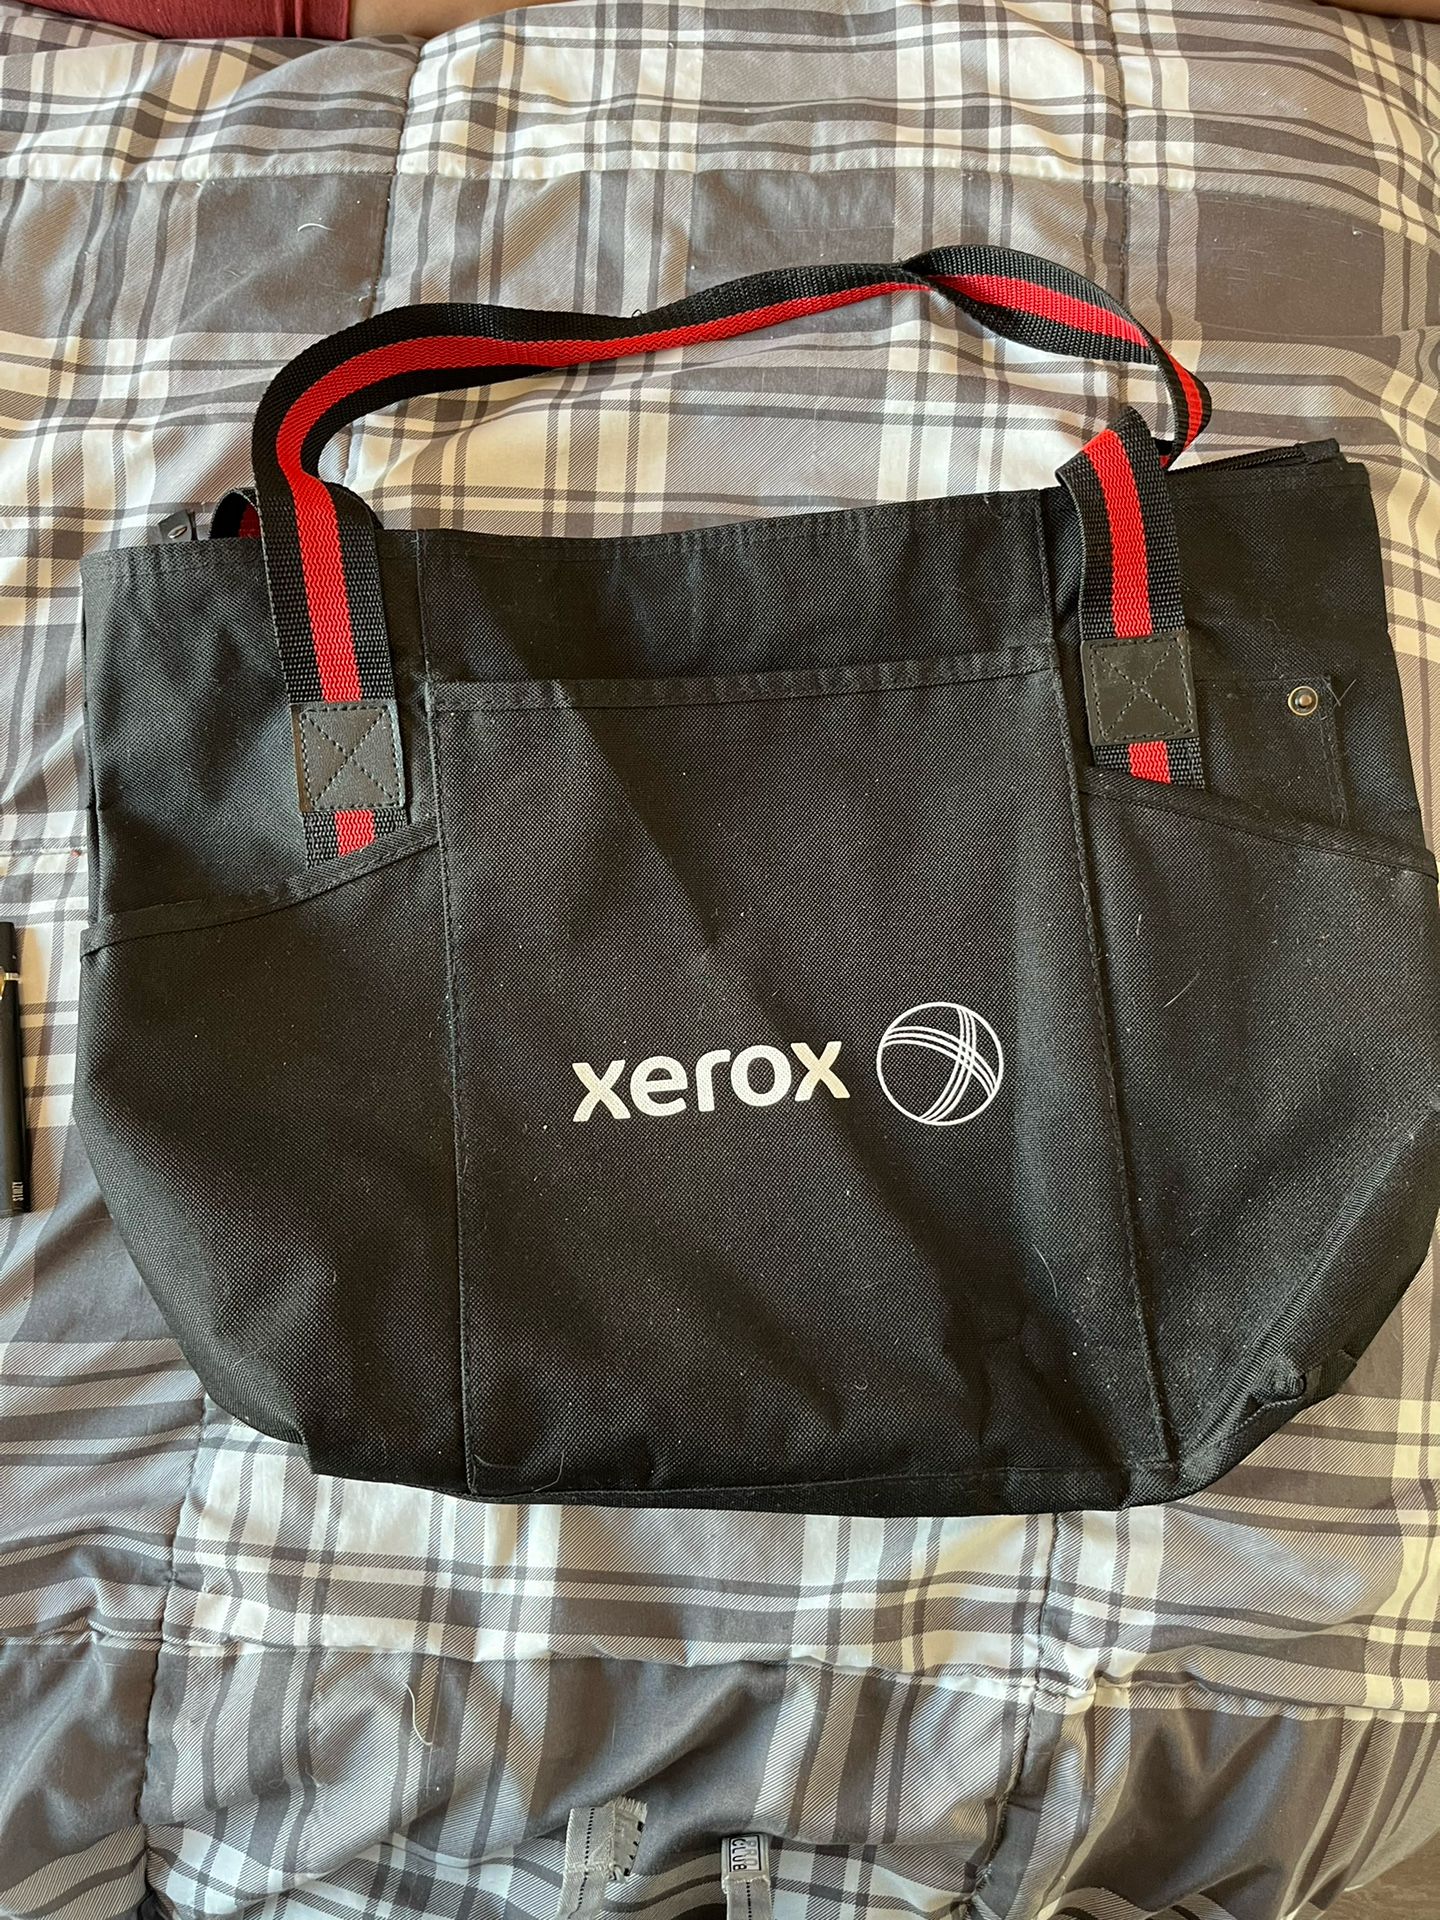 Xerox camera bag 